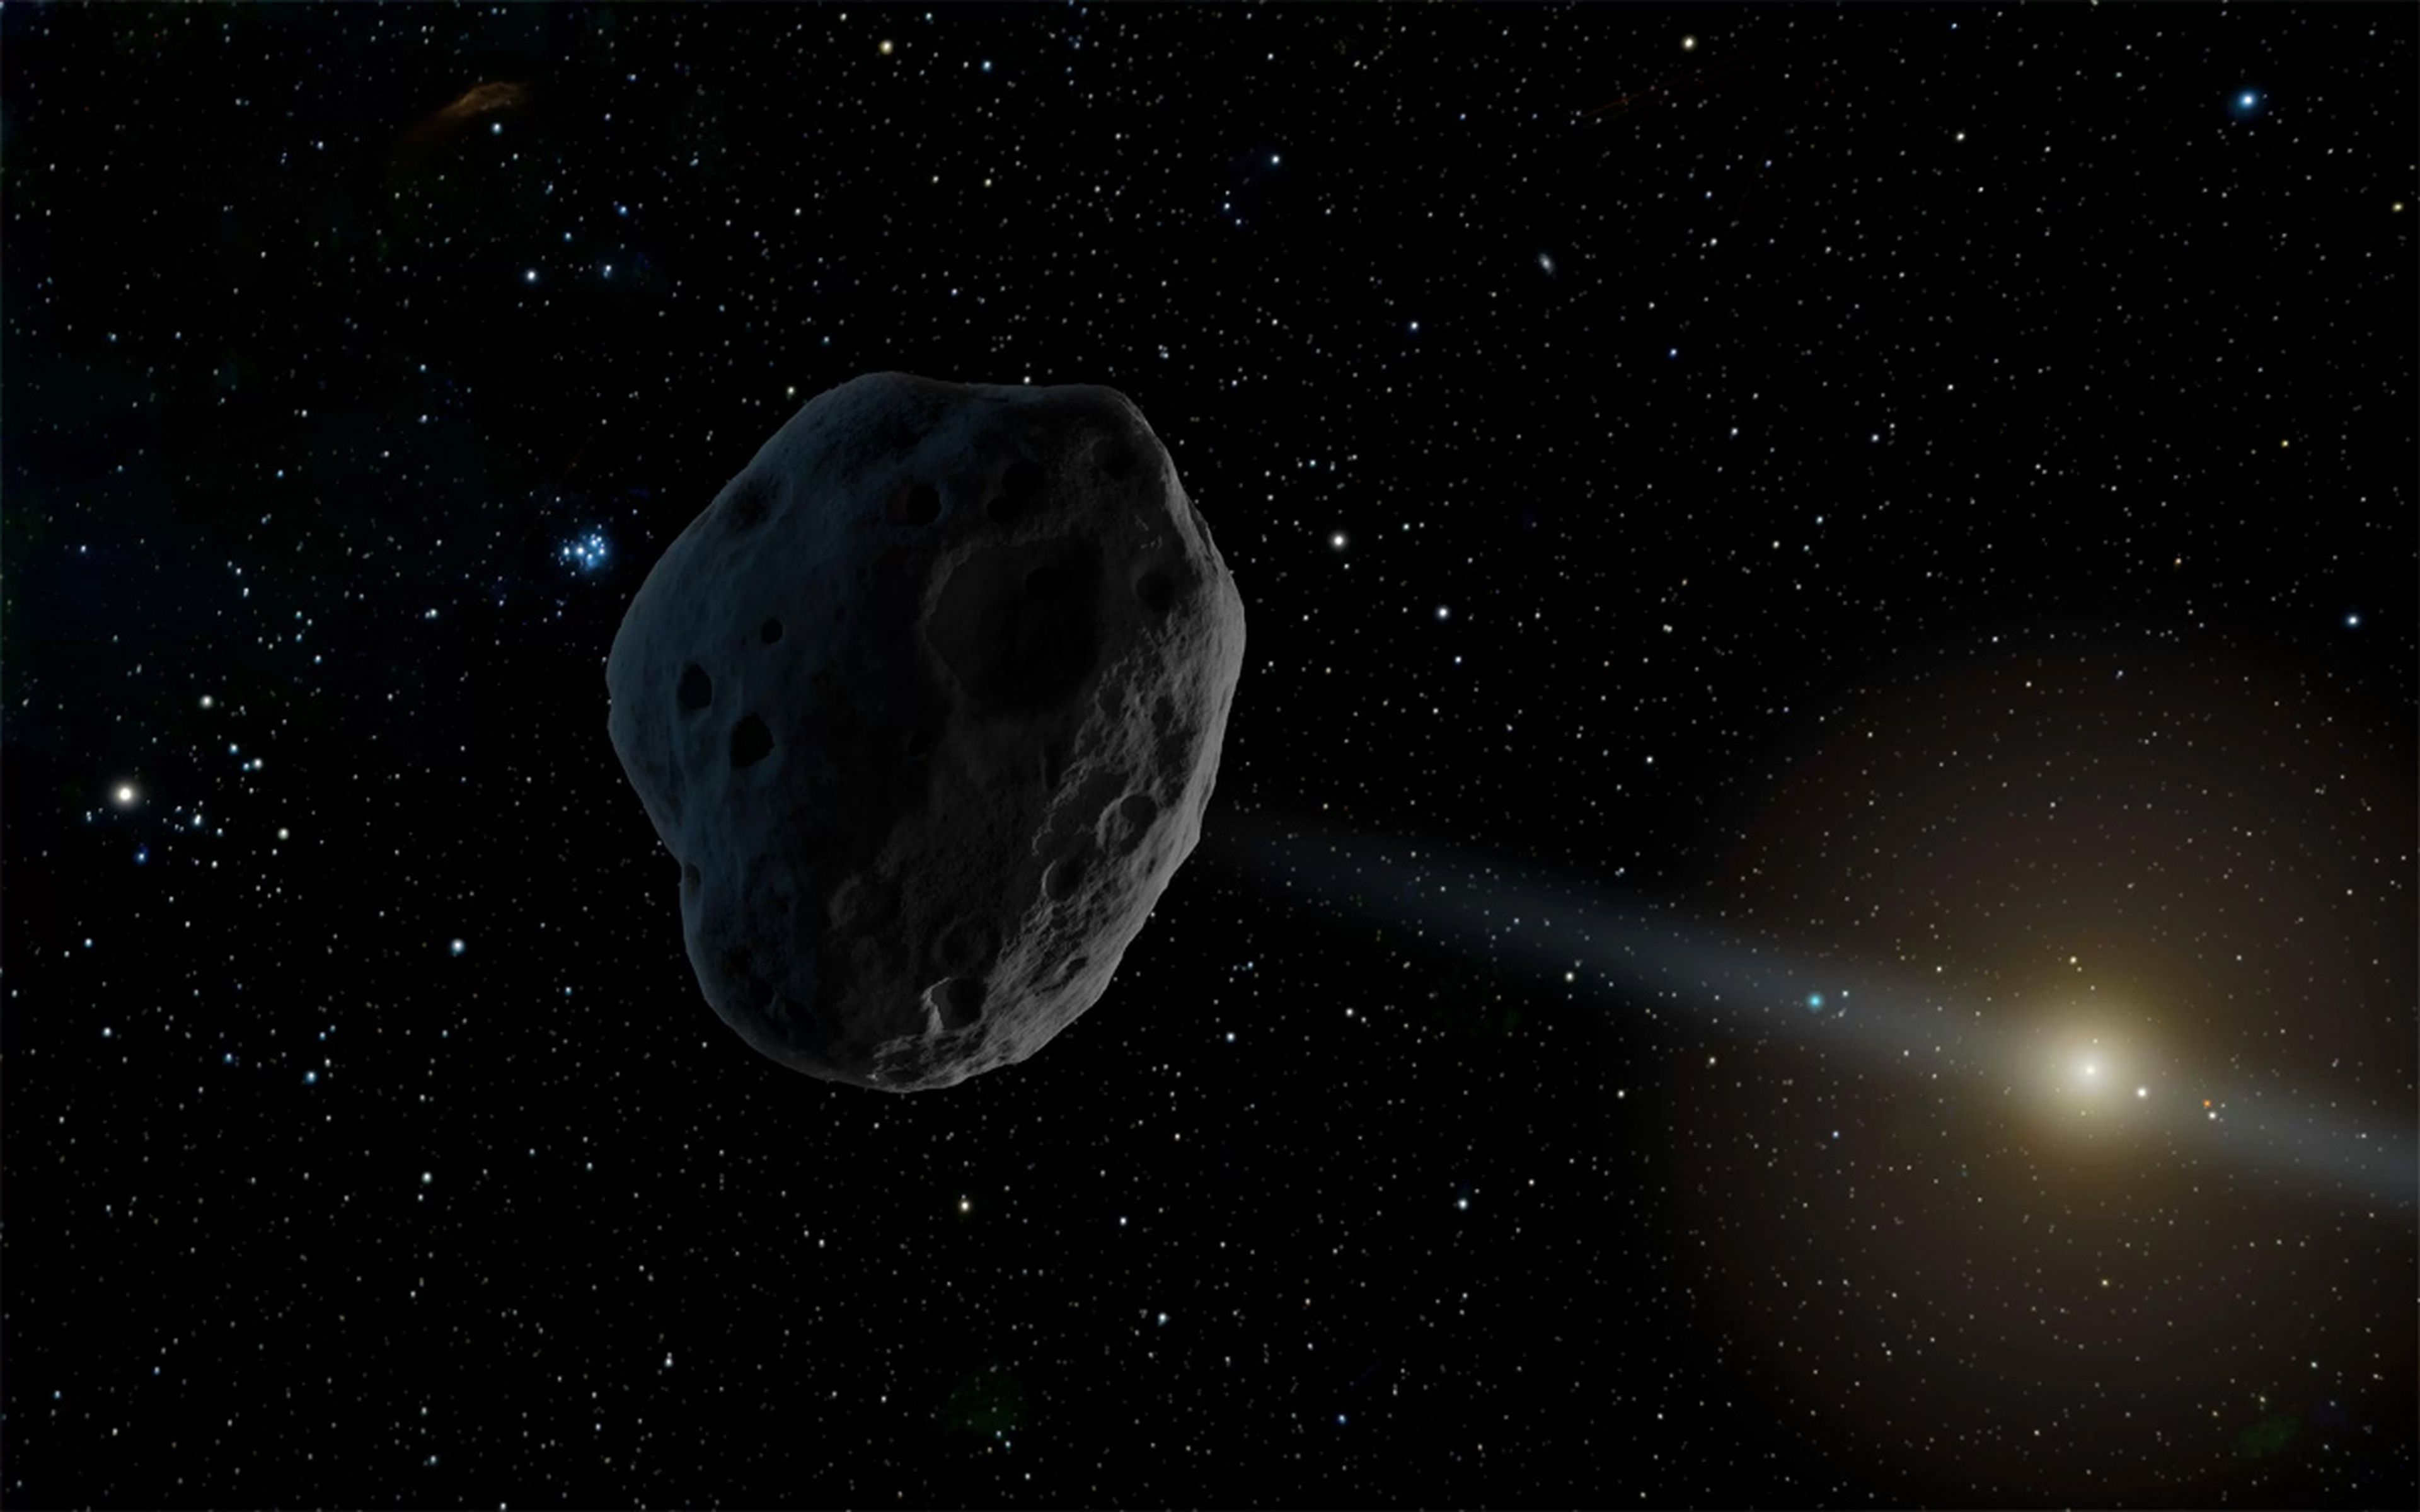 Asteroide 2002 AJ129